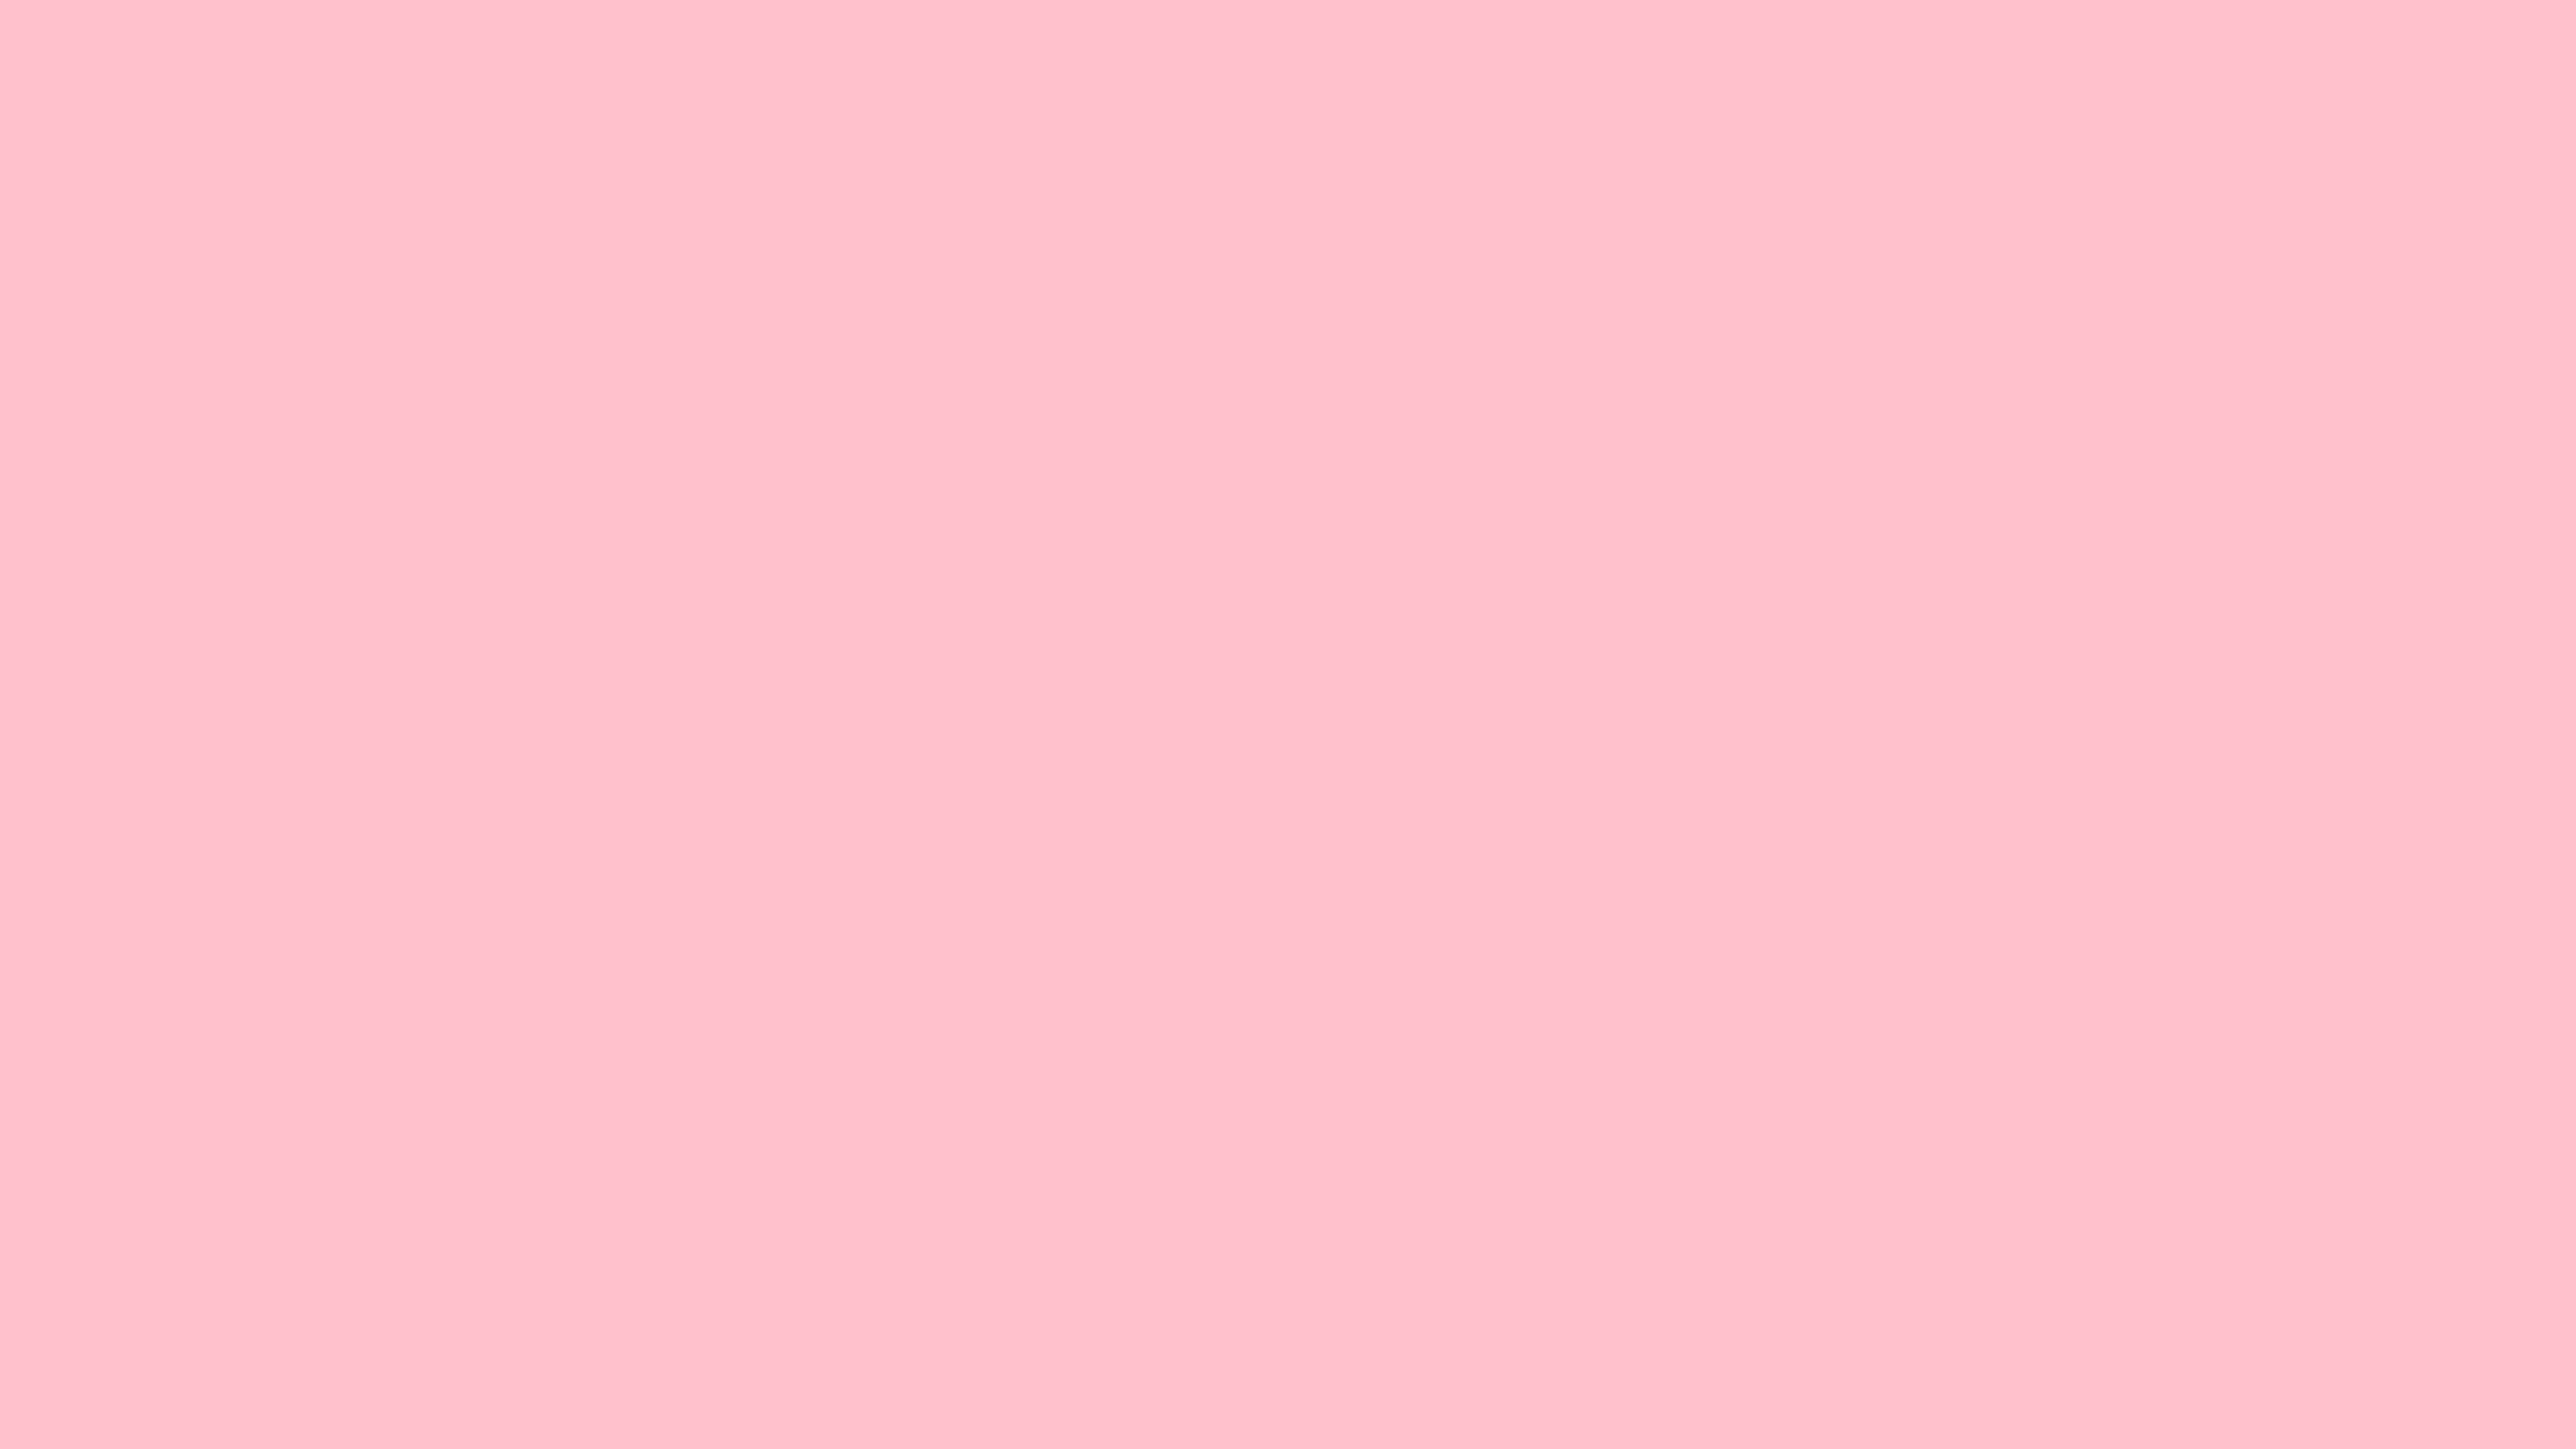 10. "Bubblegum Pink" - wide 4